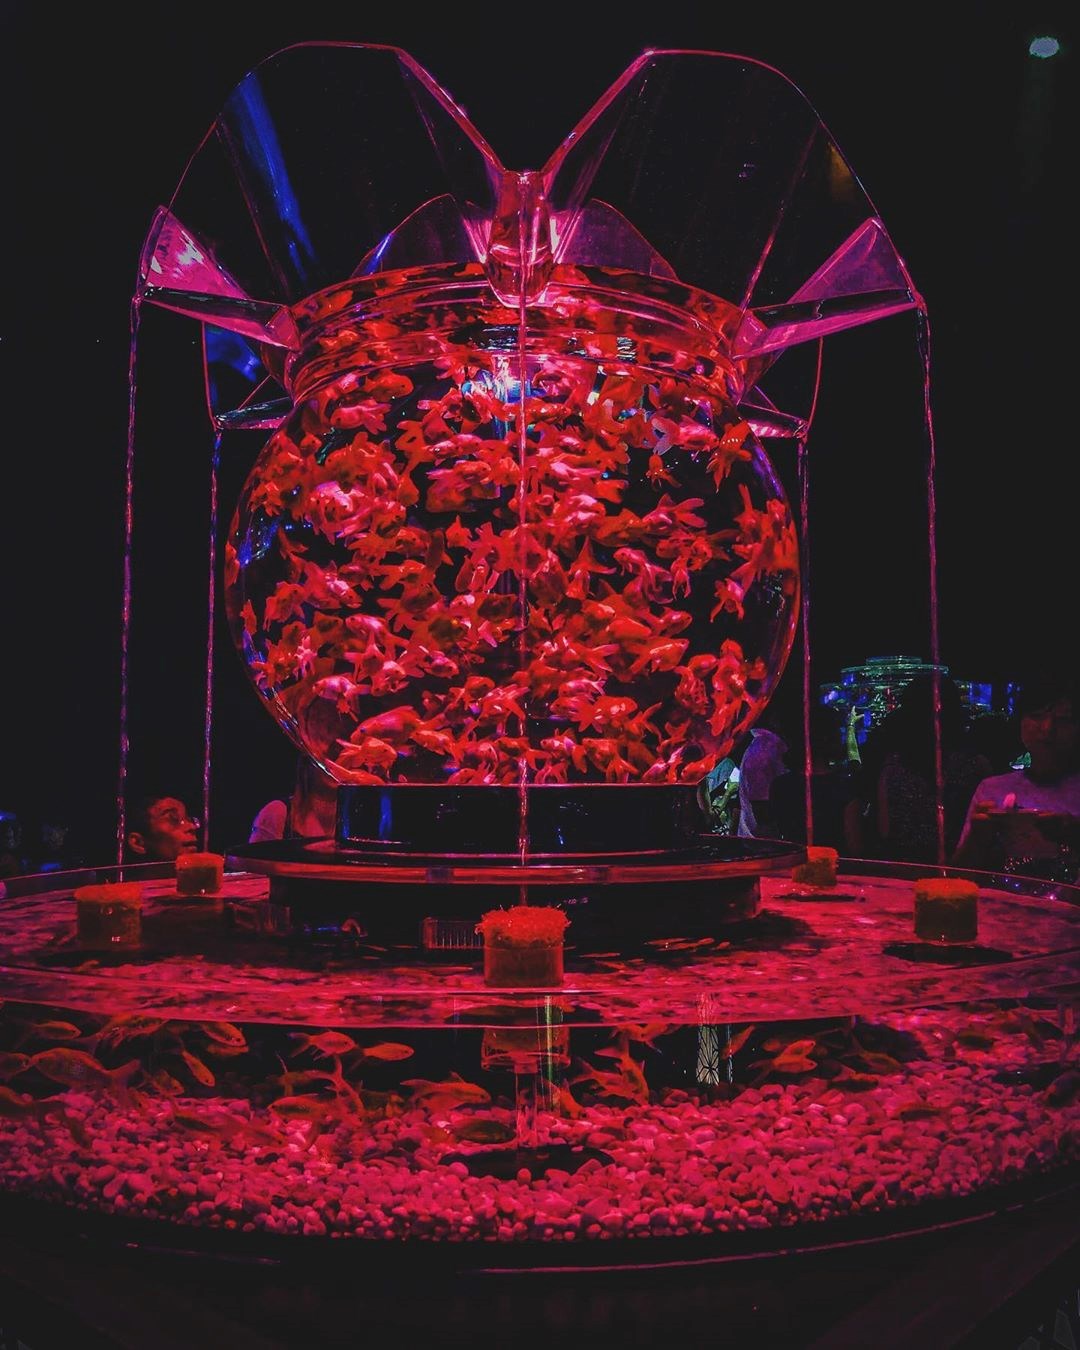 日本 期間限定以後看不到 全世界最美的魚缸在這裡 超過１萬隻金魚超壯觀 還有金魚燈光秀夏日最盛大的藝術饗宴